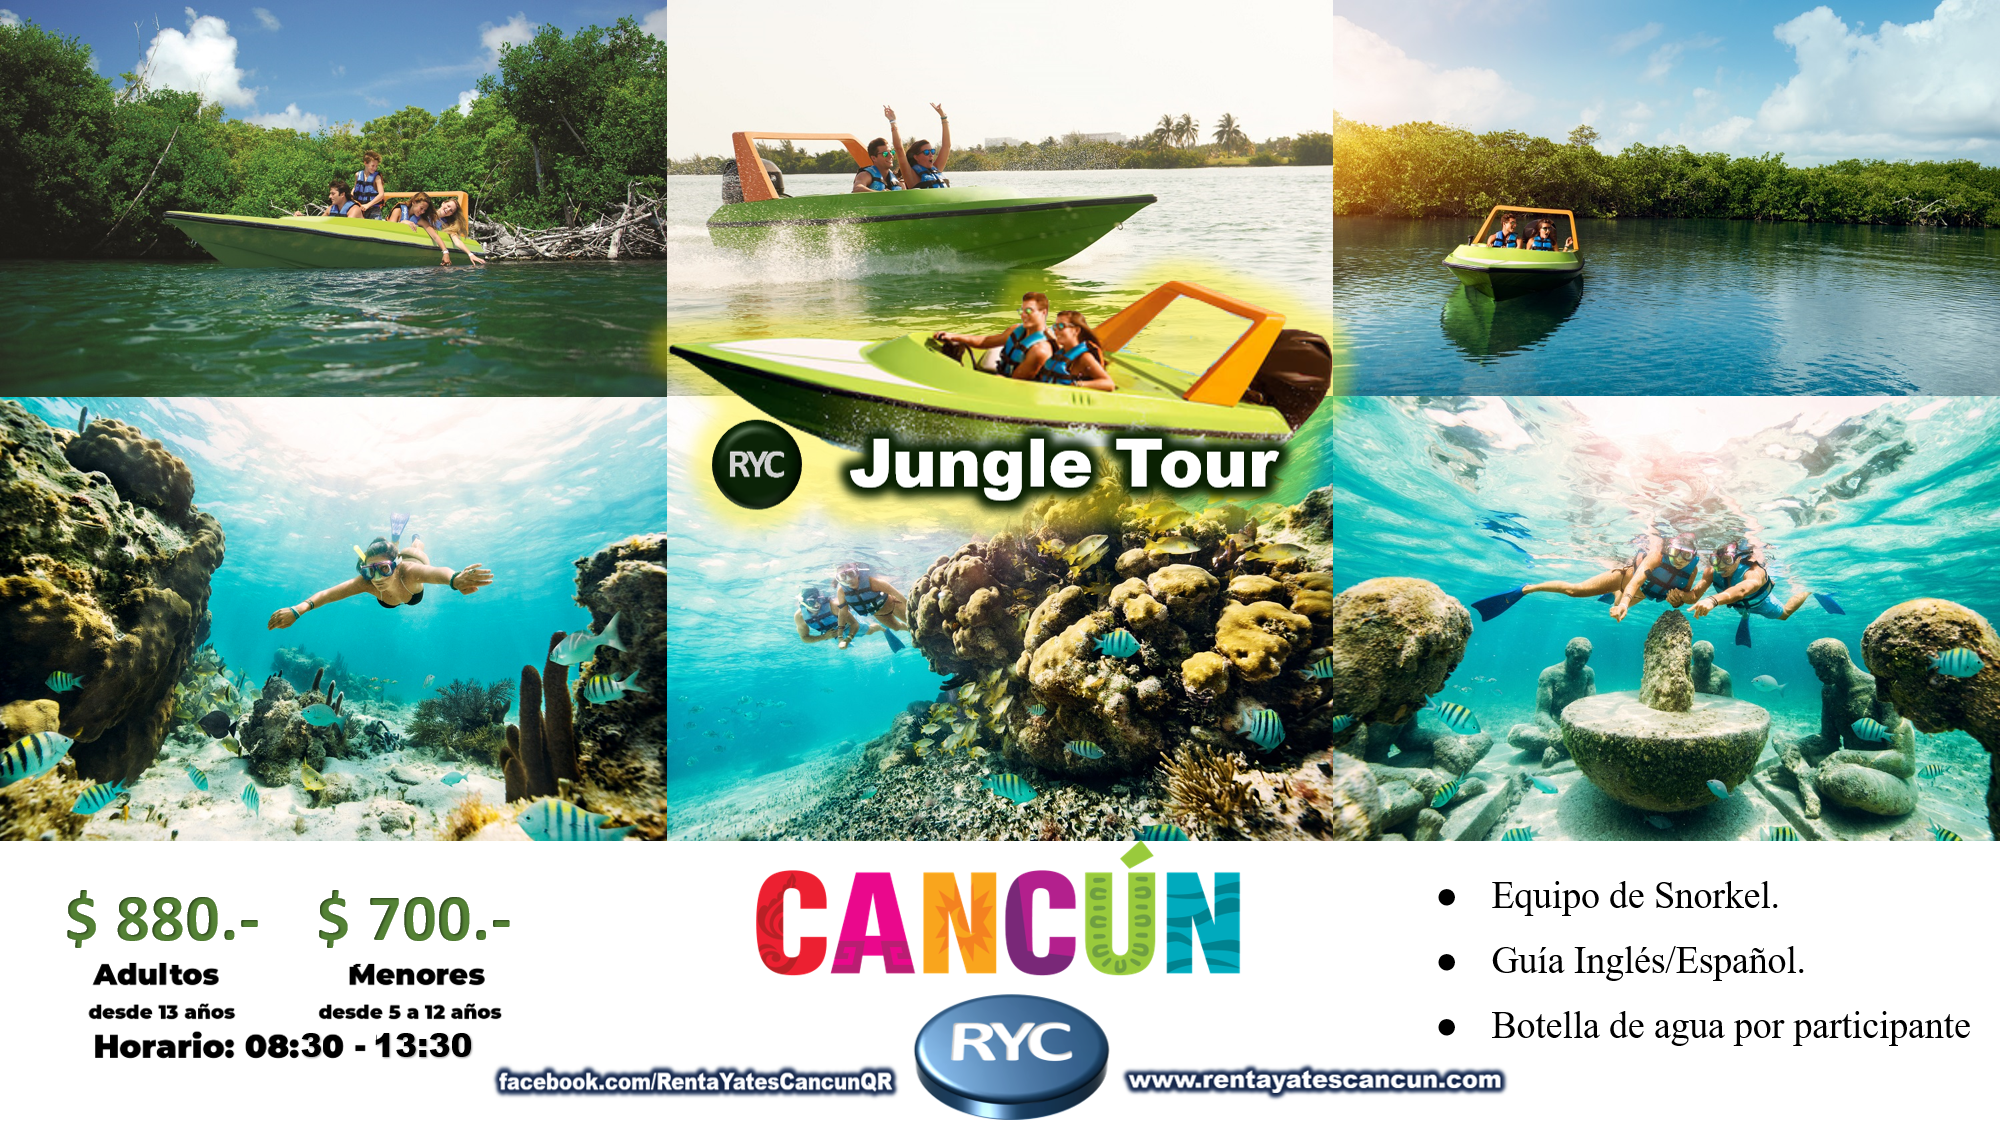 Jungle Tour una experiencia inolvidable